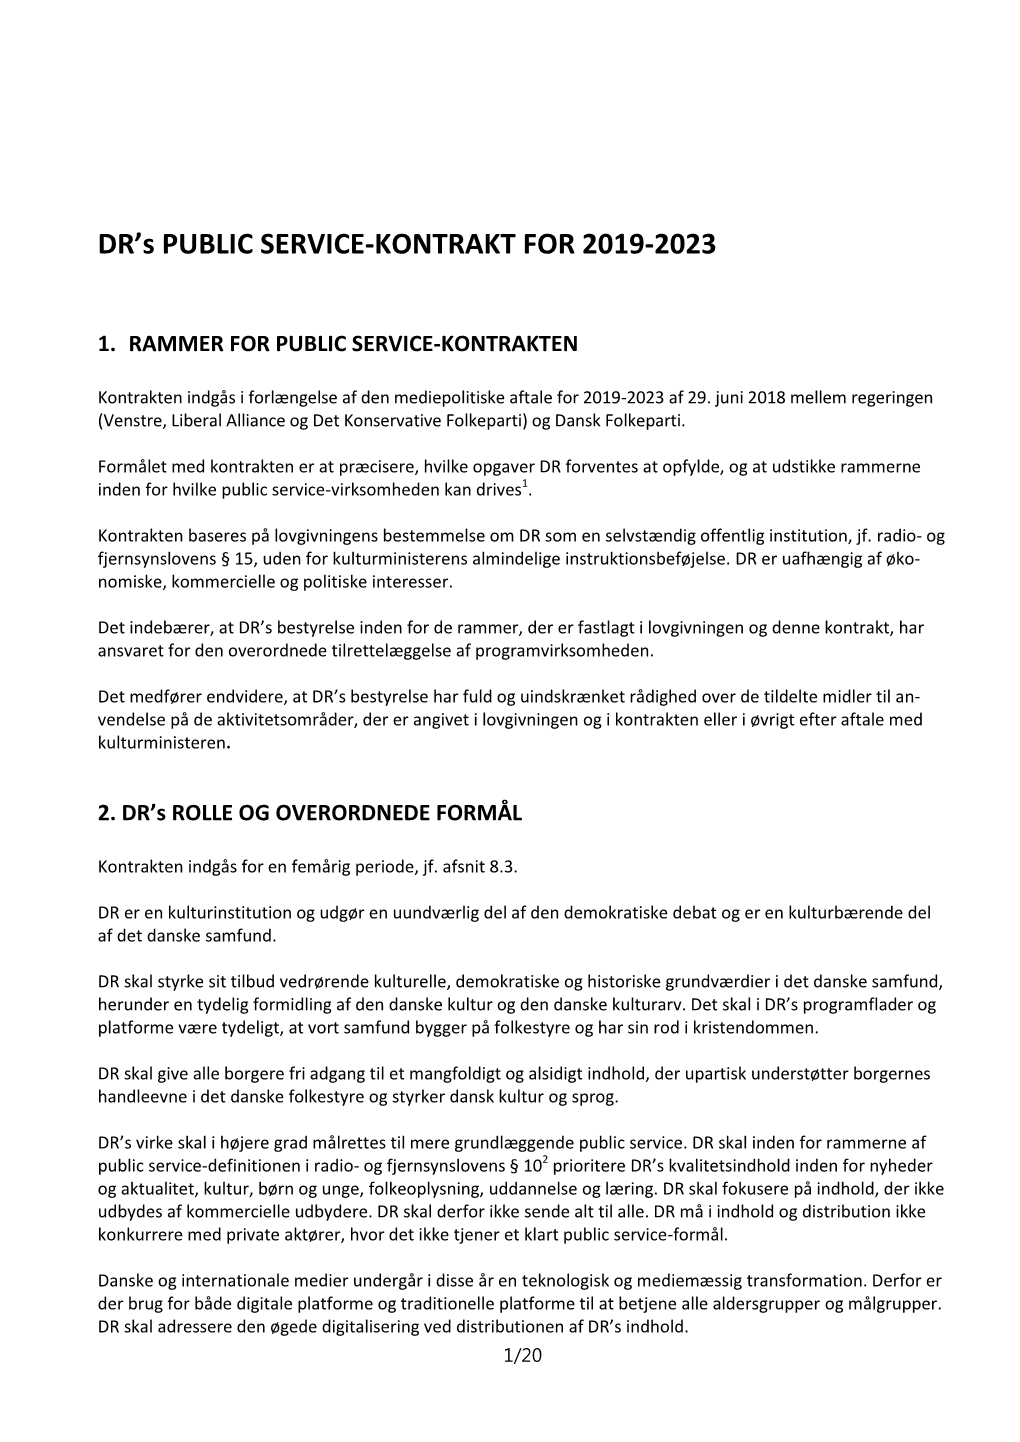 DR's PUBLIC SERVICE-KONTRAKT for 2019-2023